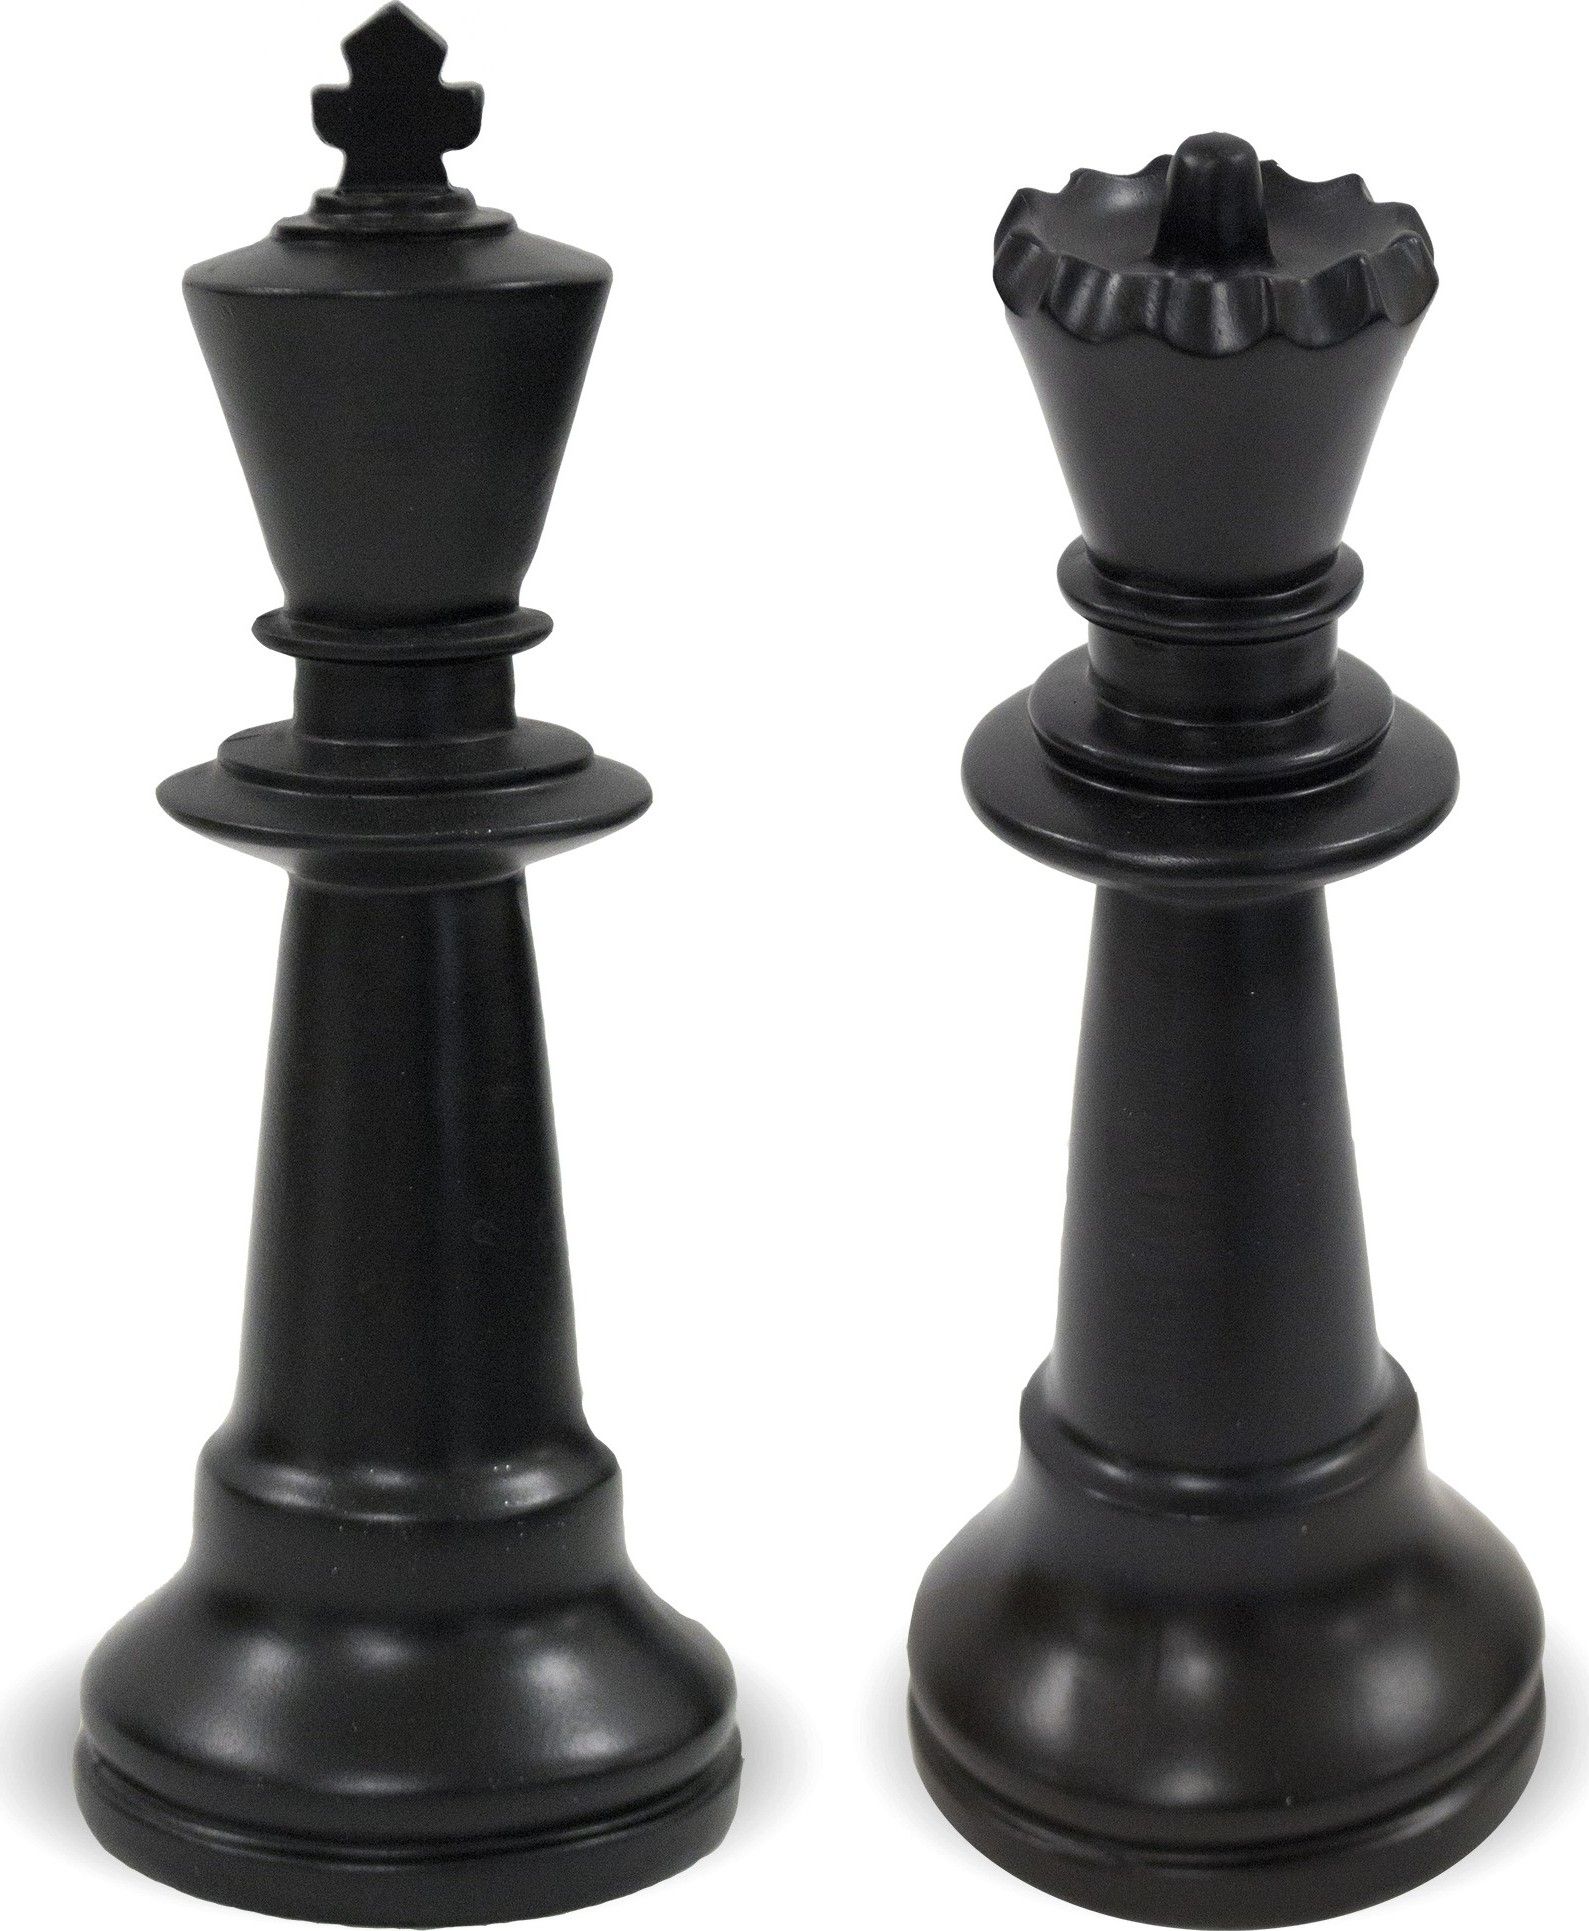 Sada černých šachových figurek 114685 - M DUM.cz